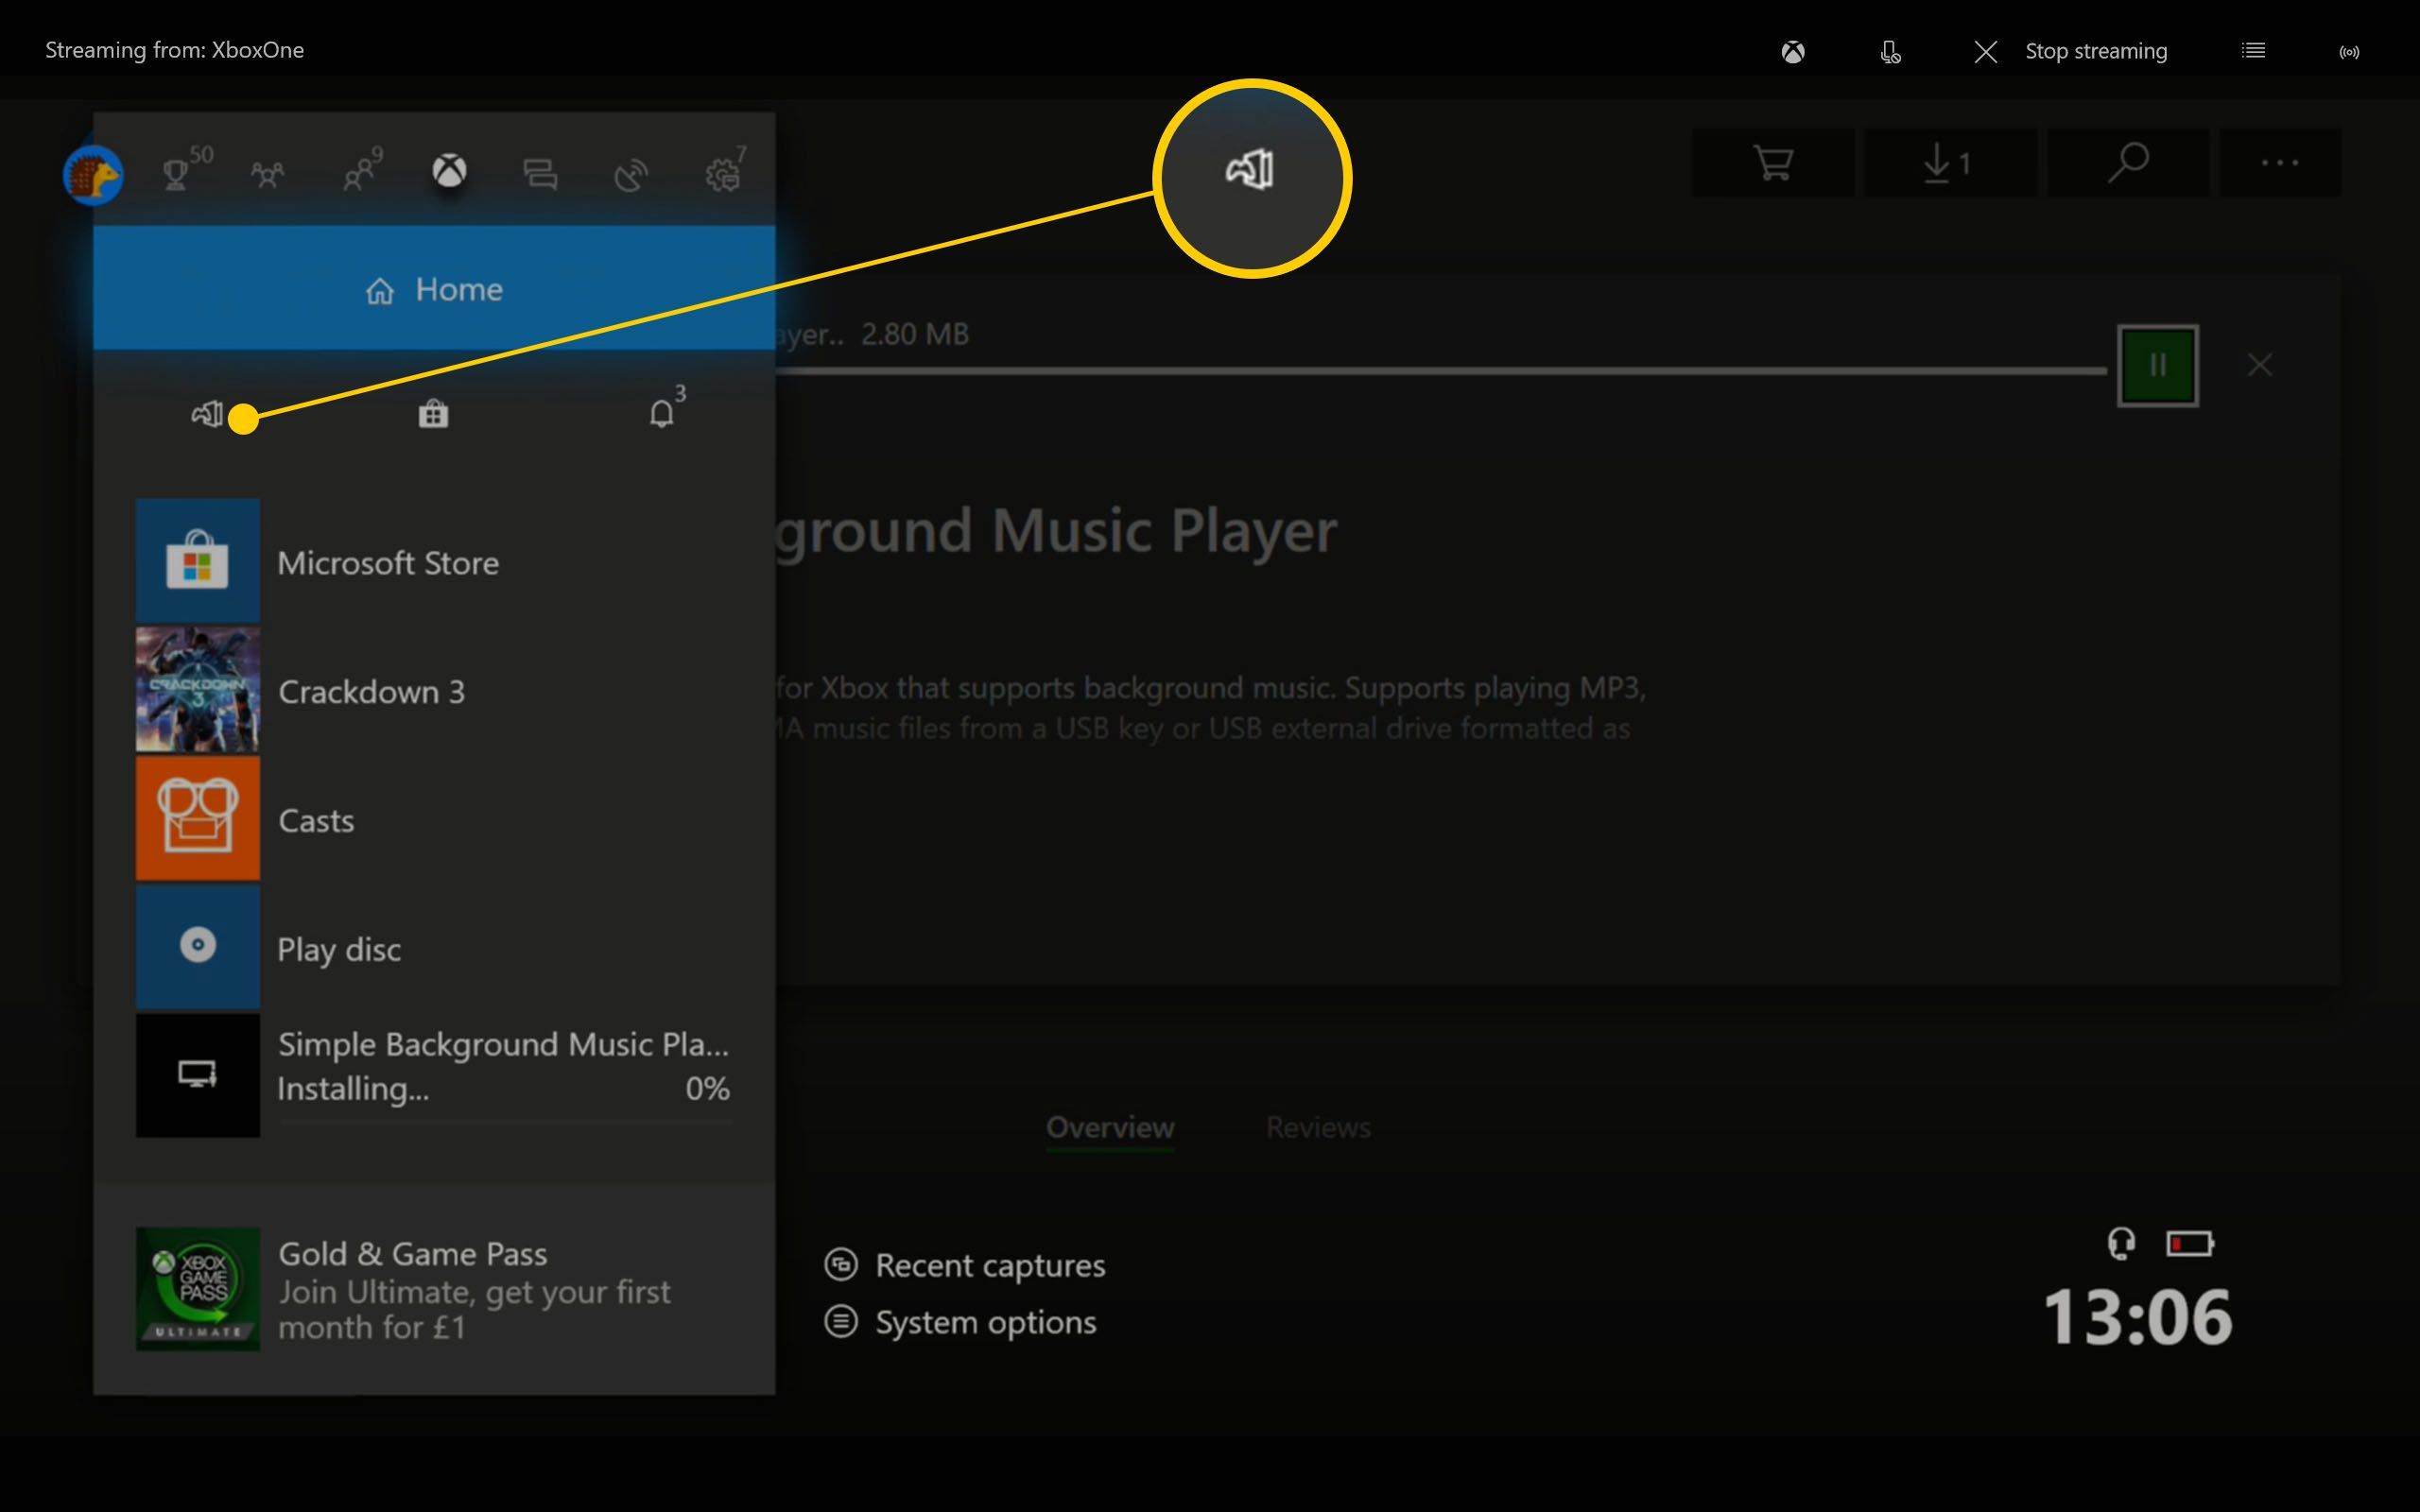 Панель инструментов Xbox One с выделенными пунктами «Мои игры и приложения»